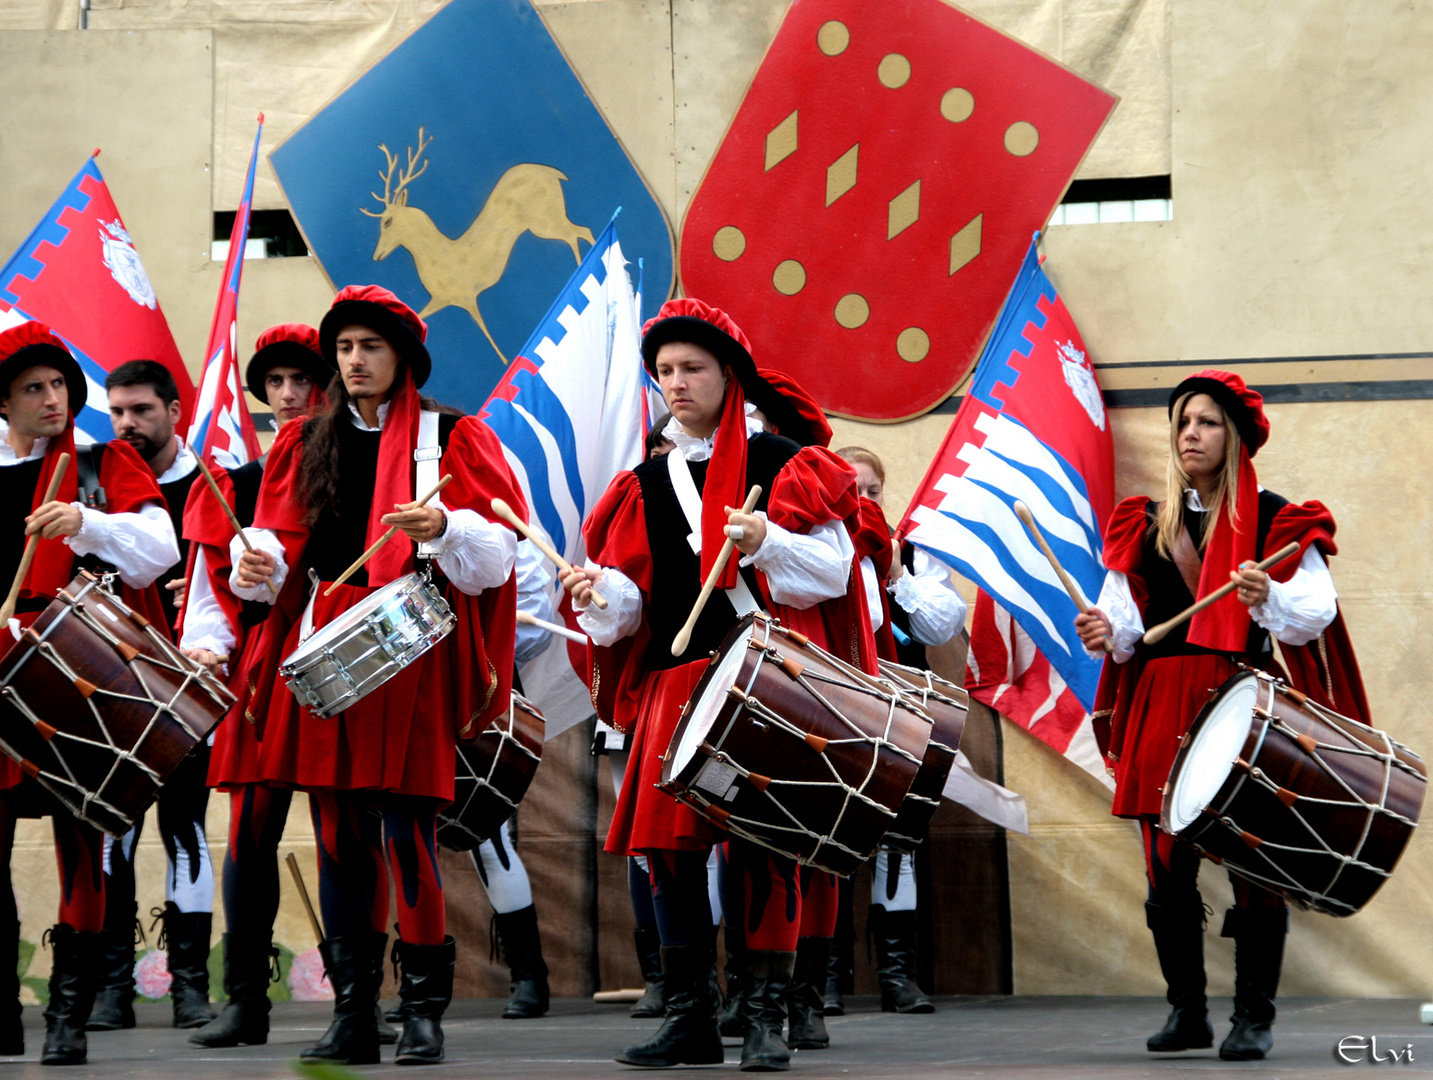 Gruppo storico Sbandieratori (Parma)